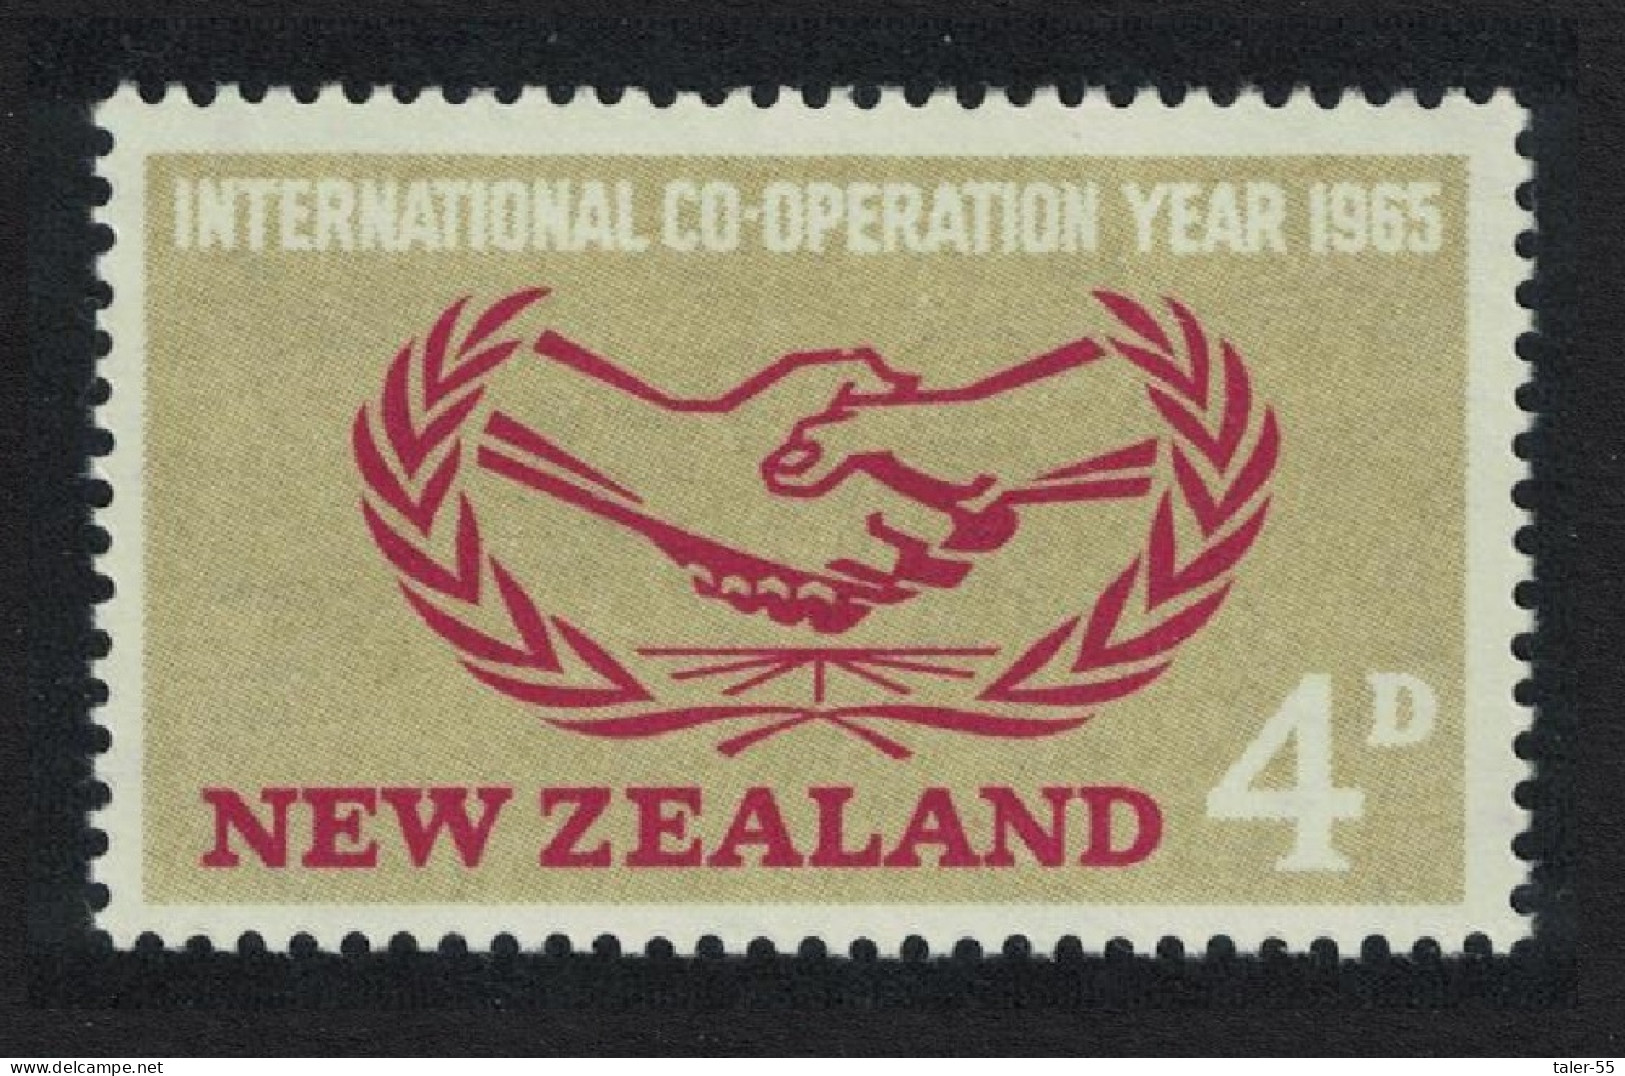 New Zealand International Co-operation Year 1965 MNH SG#833 - Ongebruikt